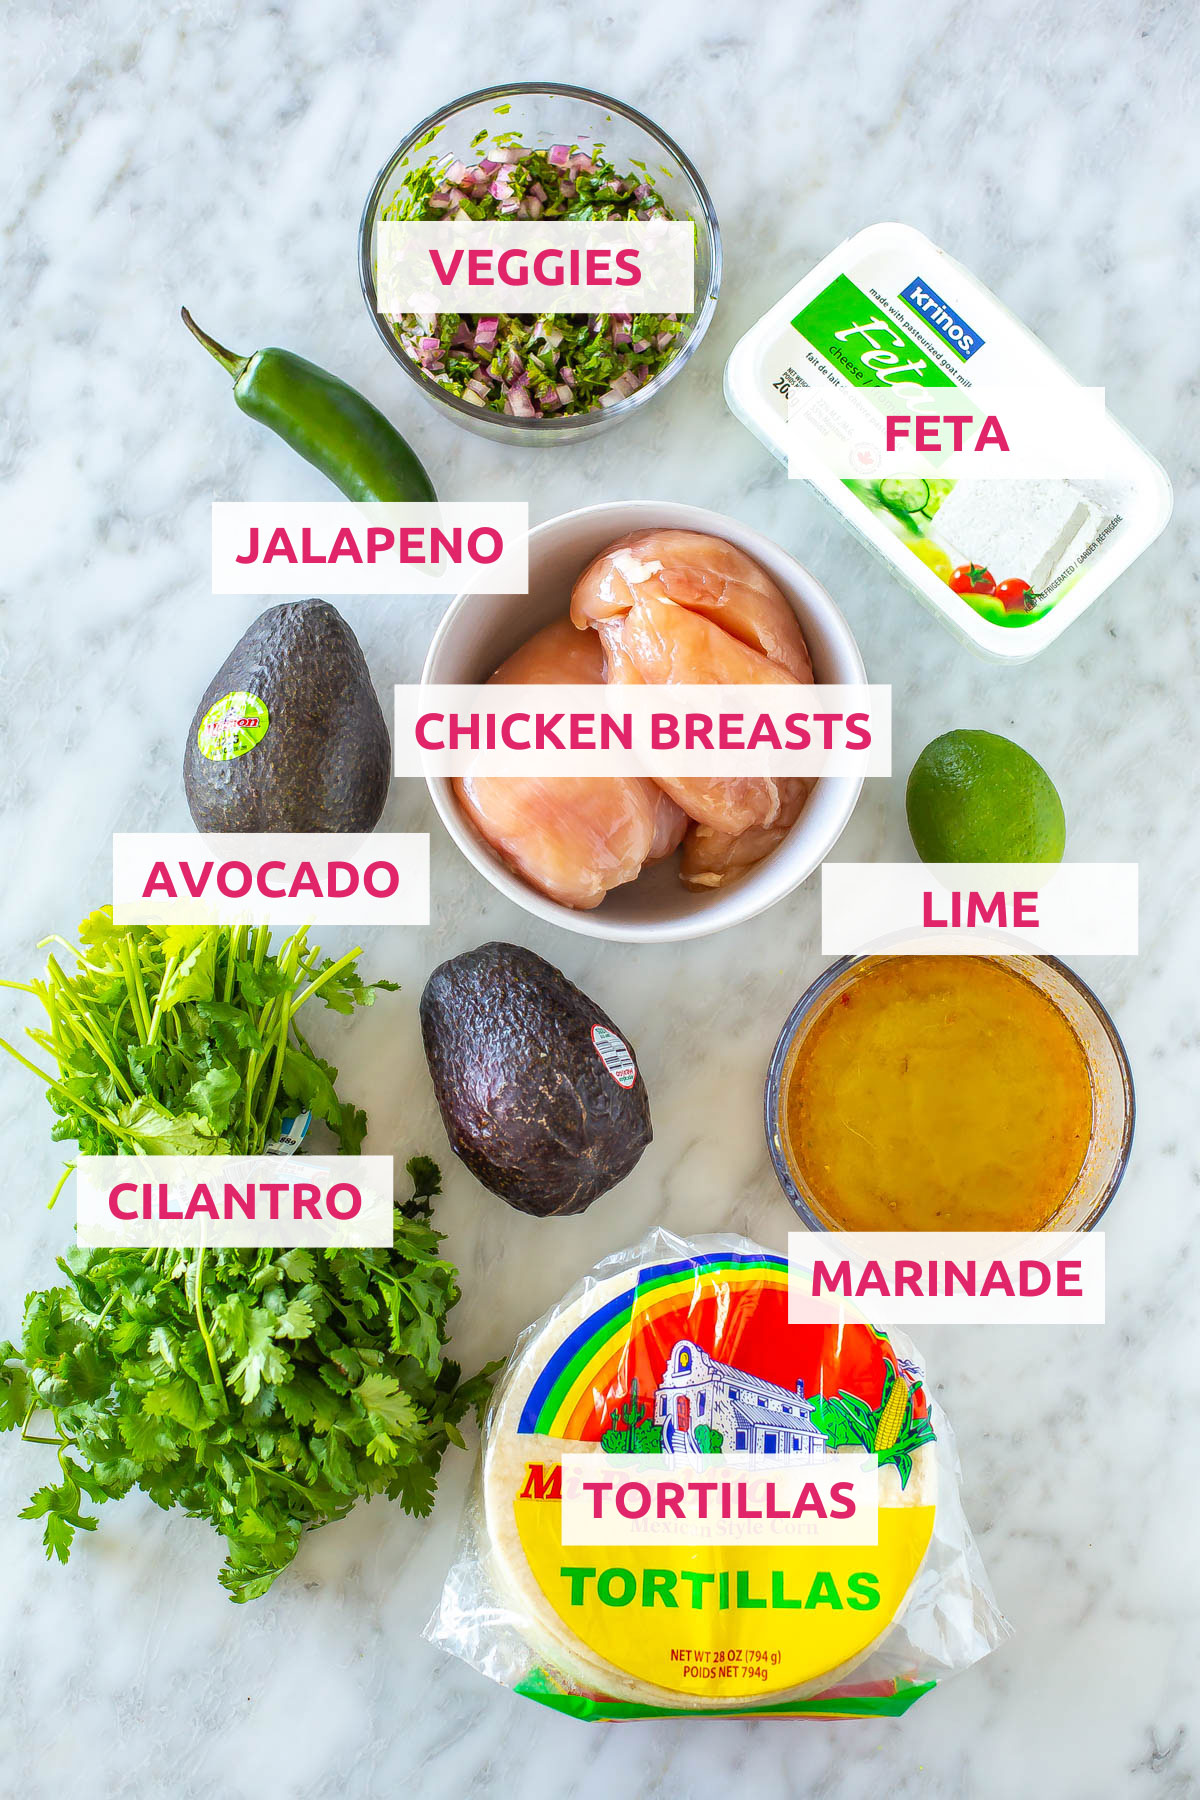 Ingredients for cilantro lime chicken tacos: veggies, jalapeno, feta, marinade, chicken breasts, avocado, cilantro and tortillas.